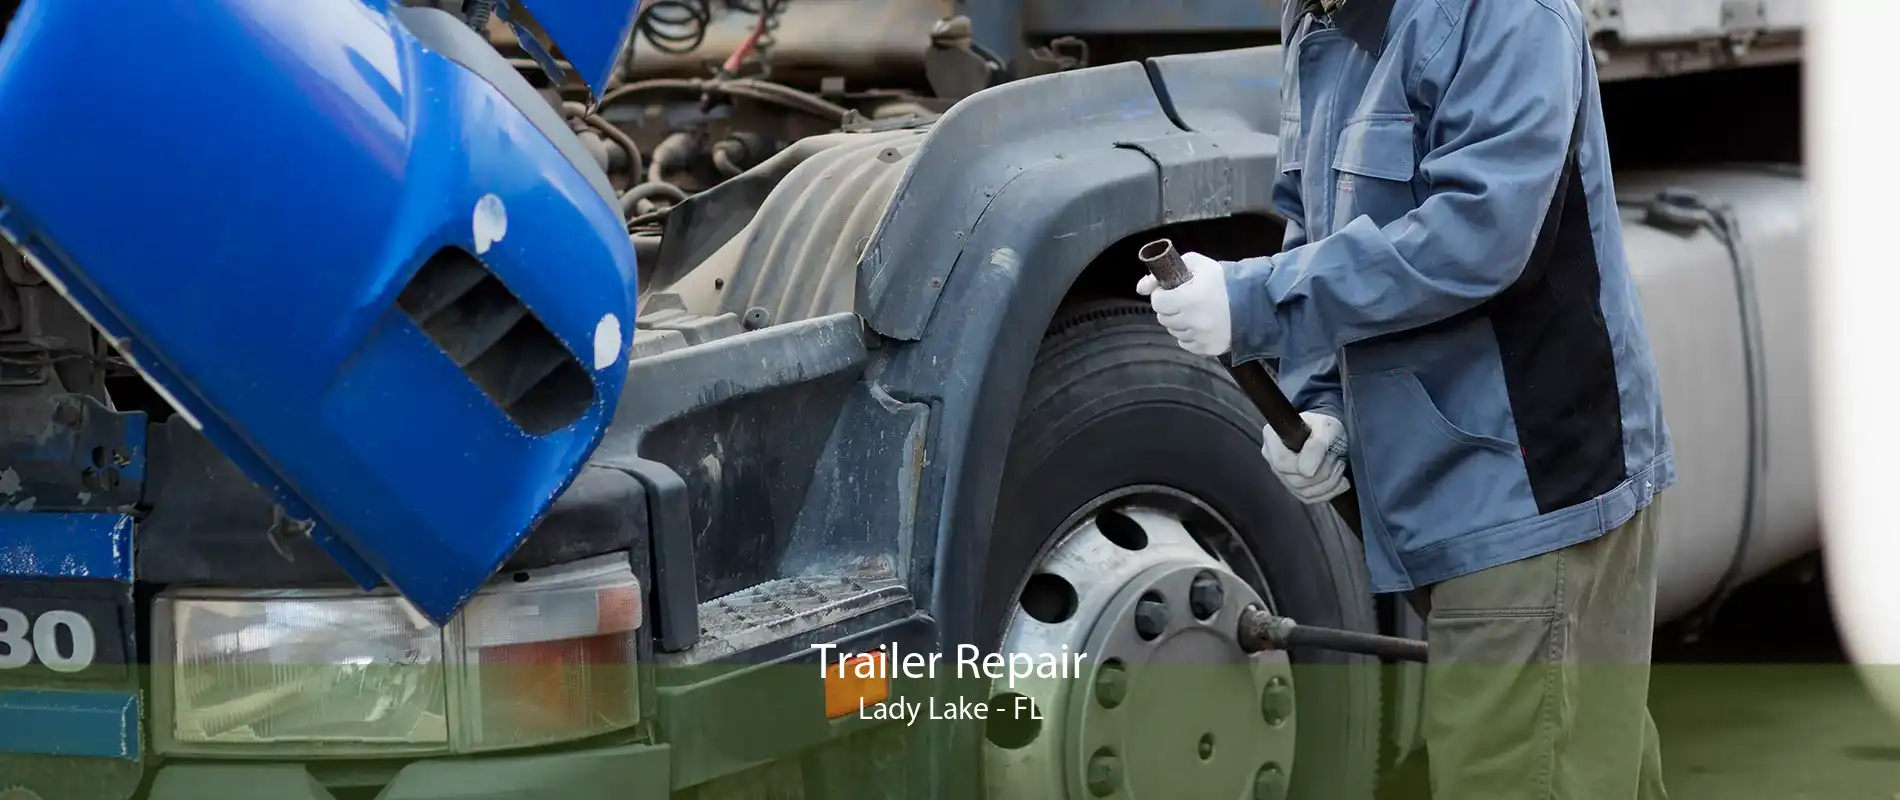 Trailer Repair Lady Lake - FL